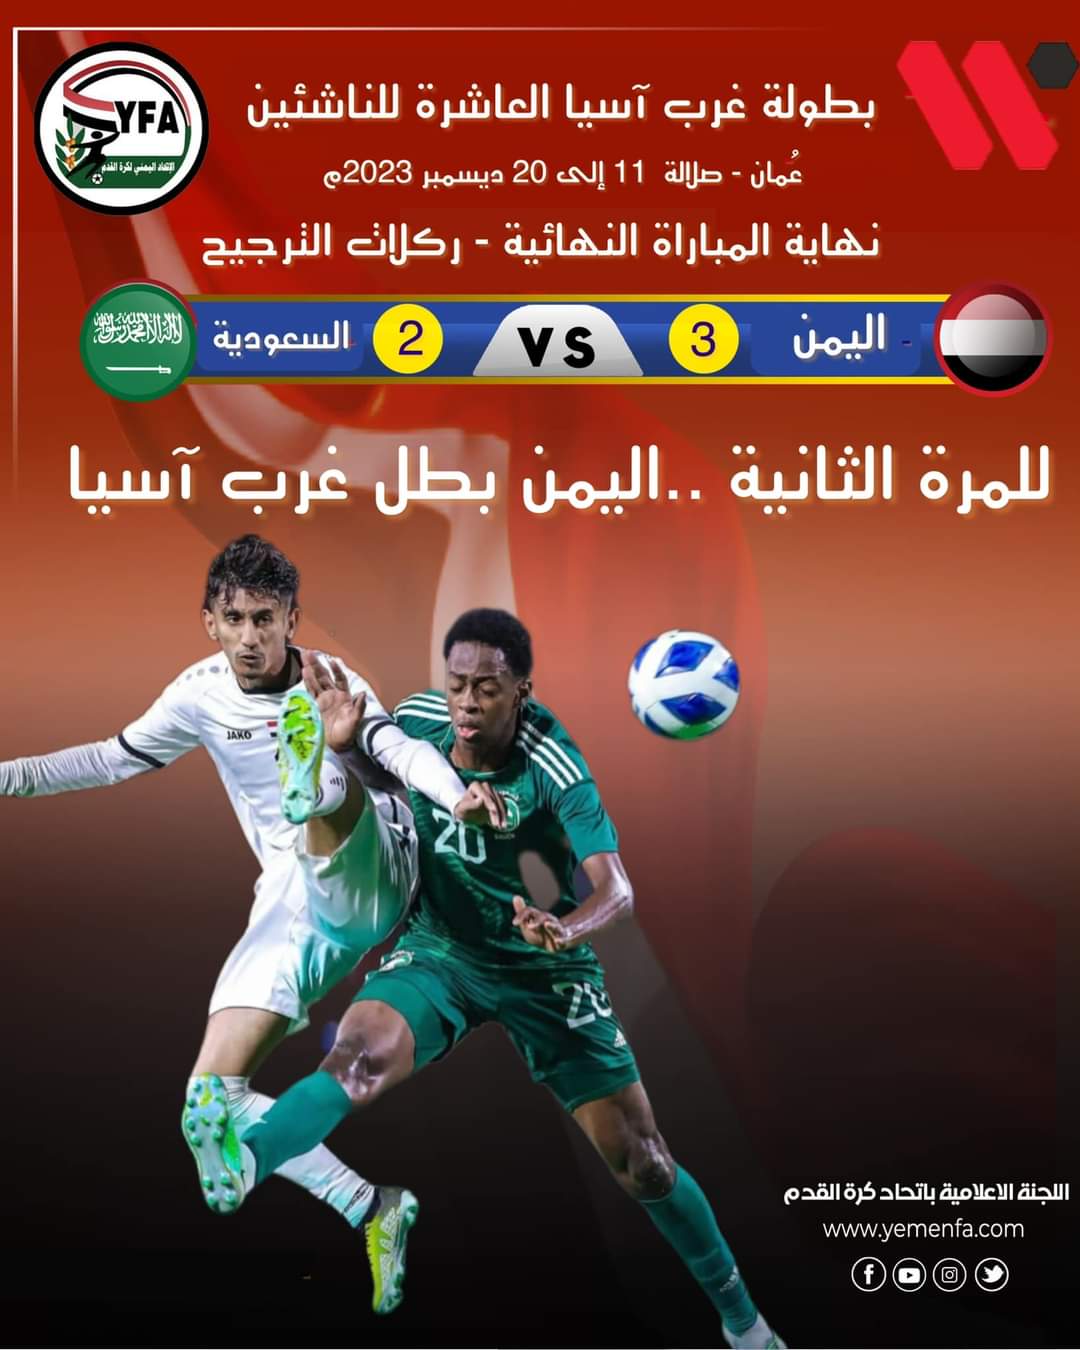  منتخب اليمن للناشئين يتوج للمرة الثانية بكأس بطولة غرب اسيا